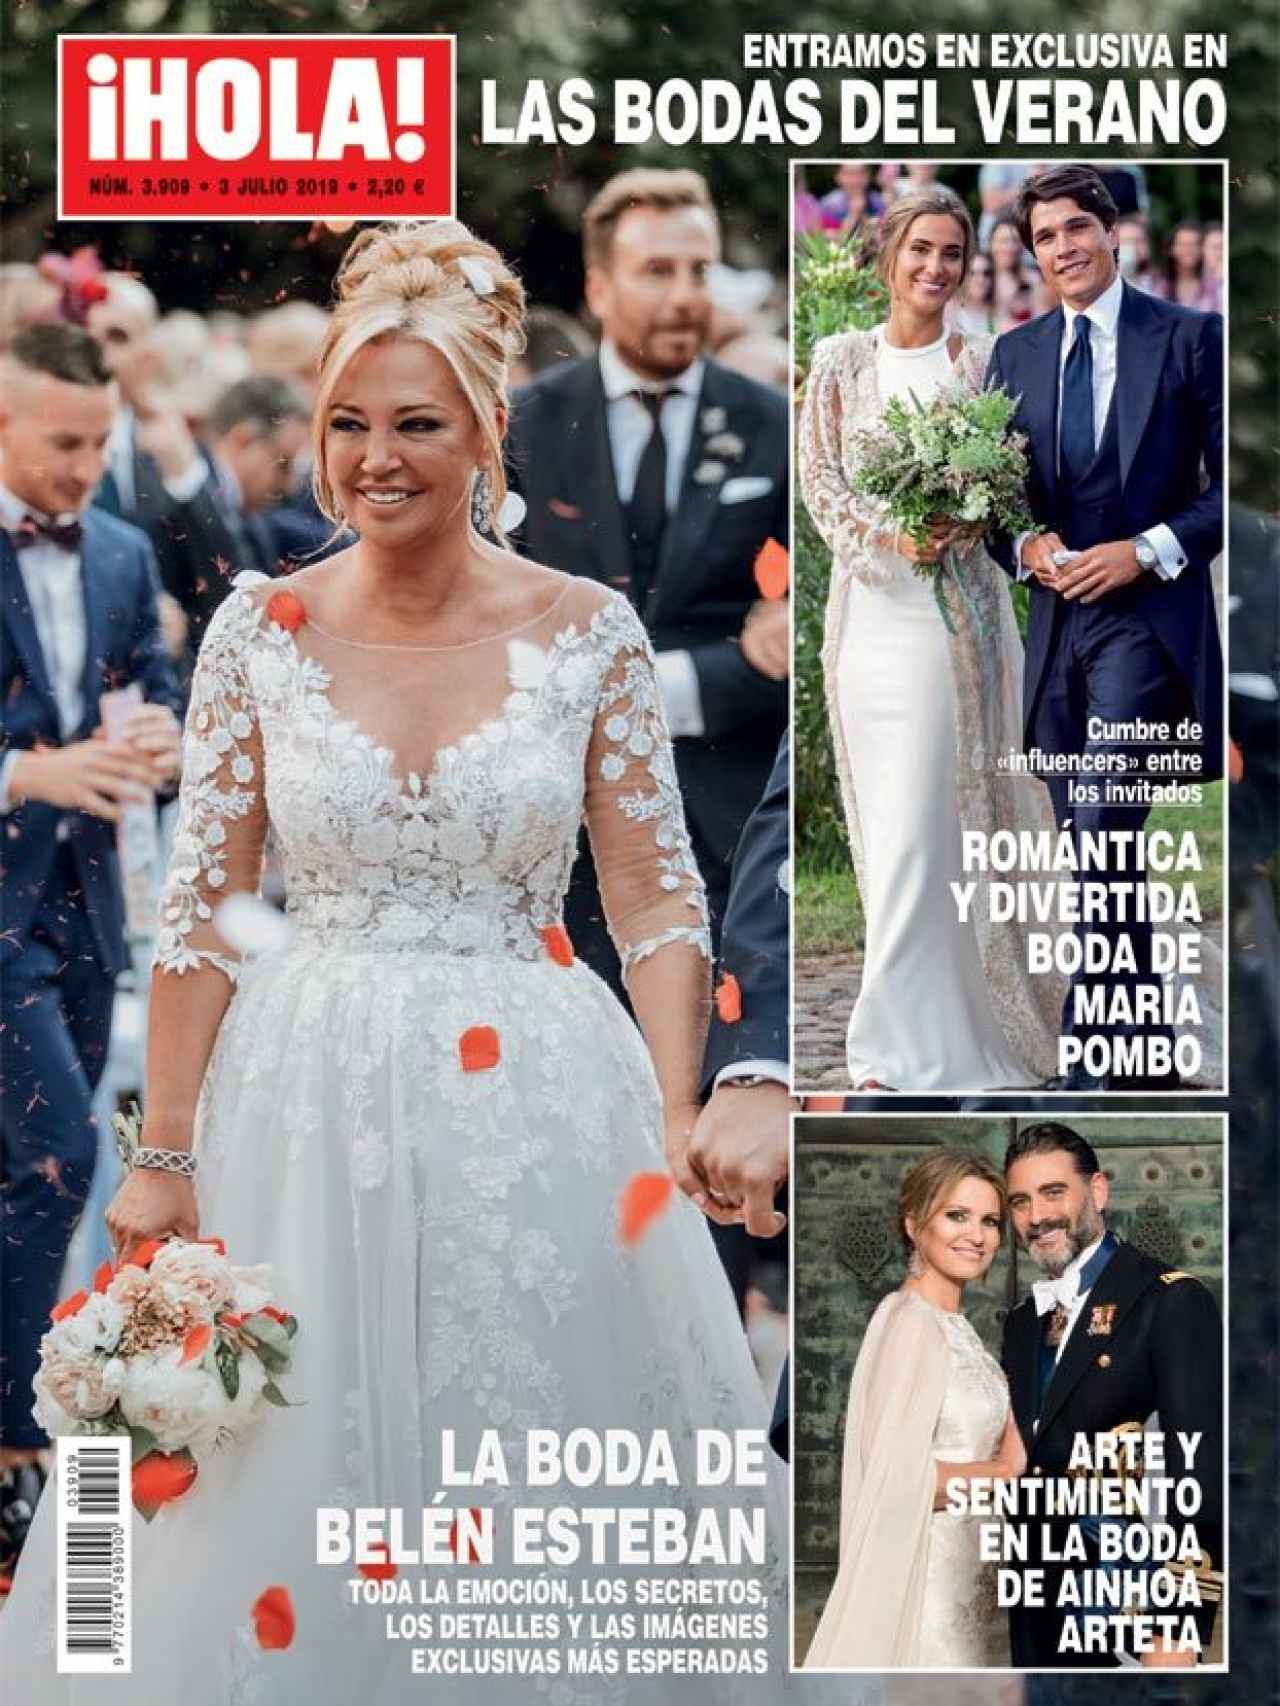 Portada de la revista '¡HOLA!' con la exclusiva de la boda de Belén Esteban.